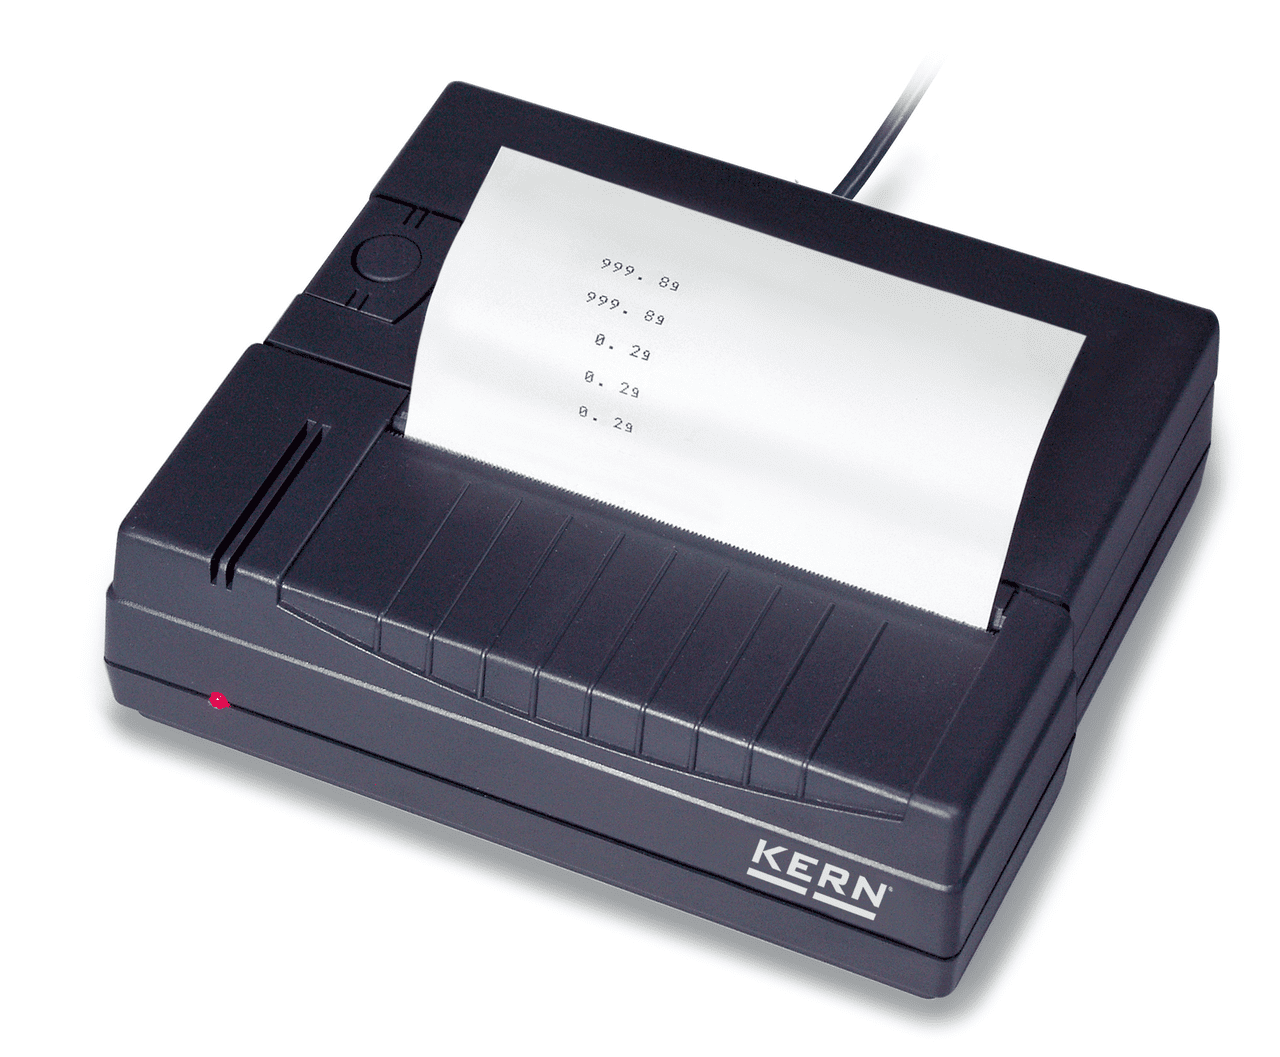 Schwarzer Drucker auf weißem Hintergrund. Ein weißes Blatt ragt aus dem Drucker heraus, als Beispiel. Auf der Vorderseite kann man ein rotes Licht sehen, im Hintergrund ragt ein Kabel aus dem Drucker.